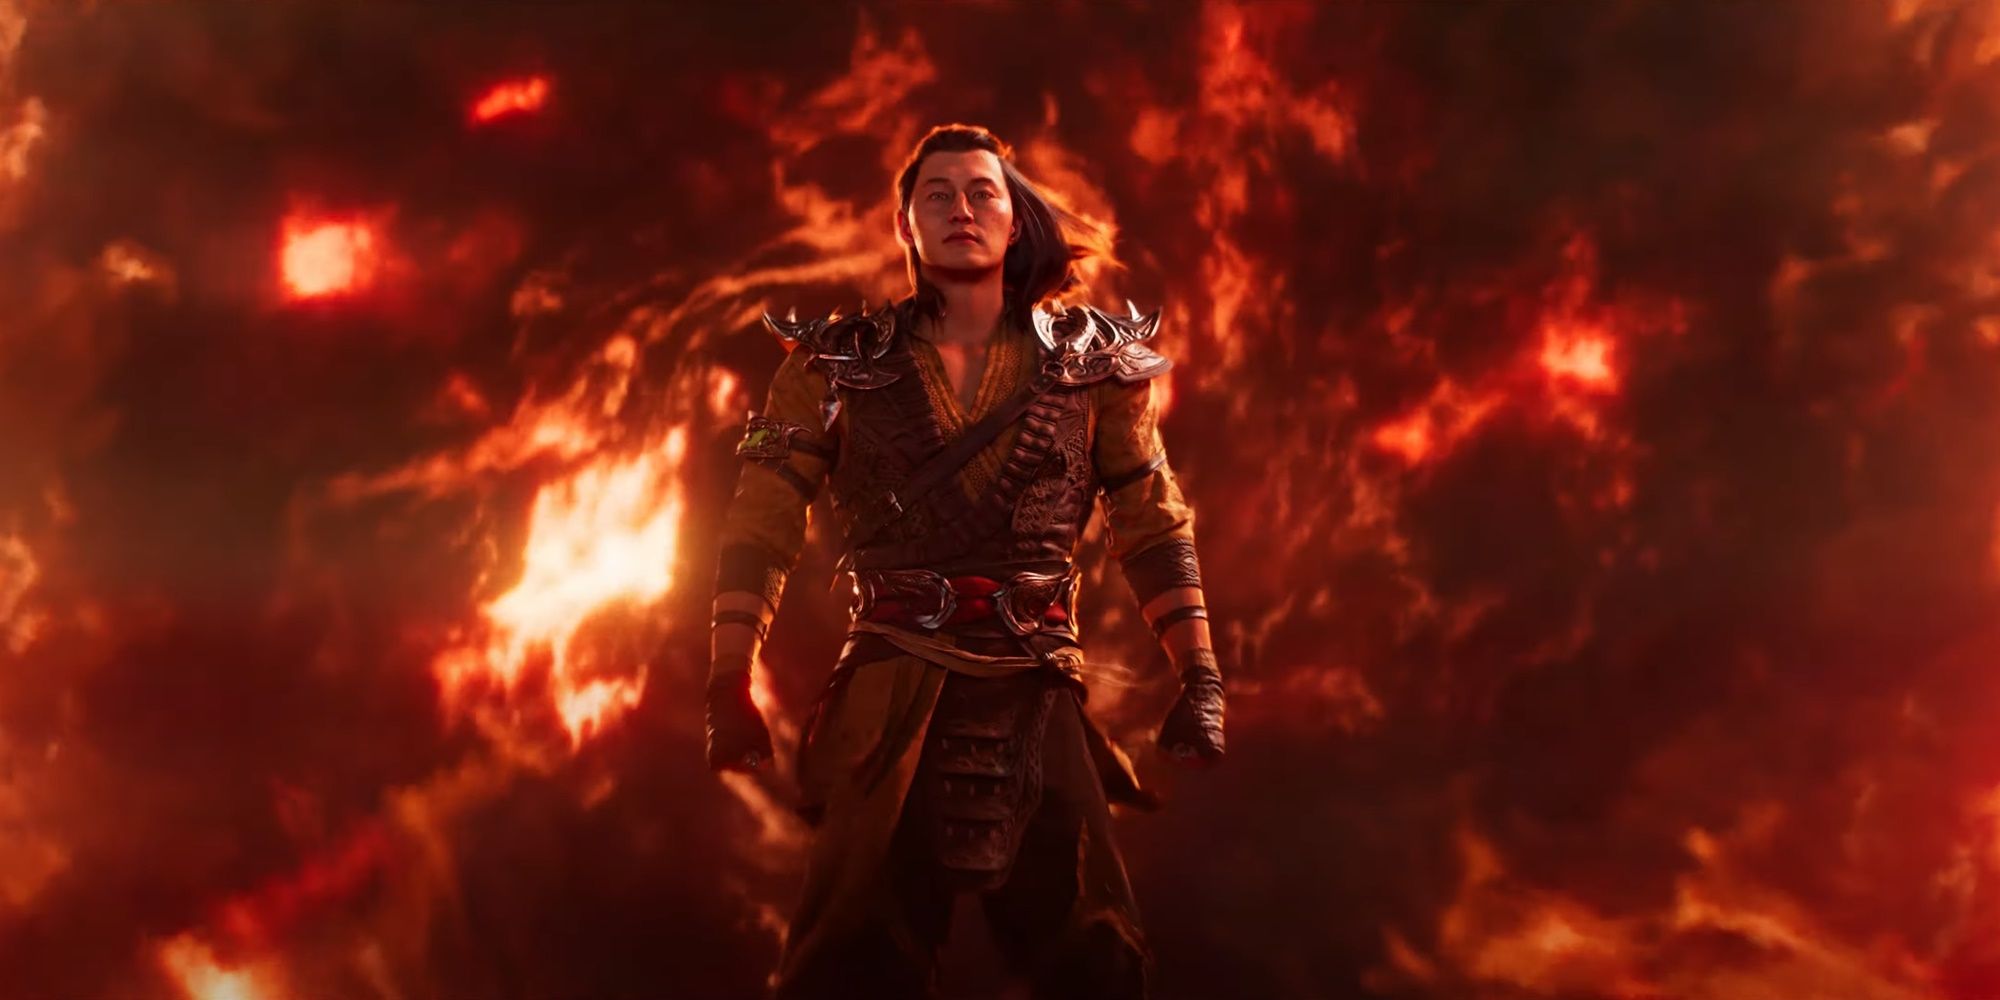 Shang Tsung walking forward surrounded by flames in Mortal Kombat 1